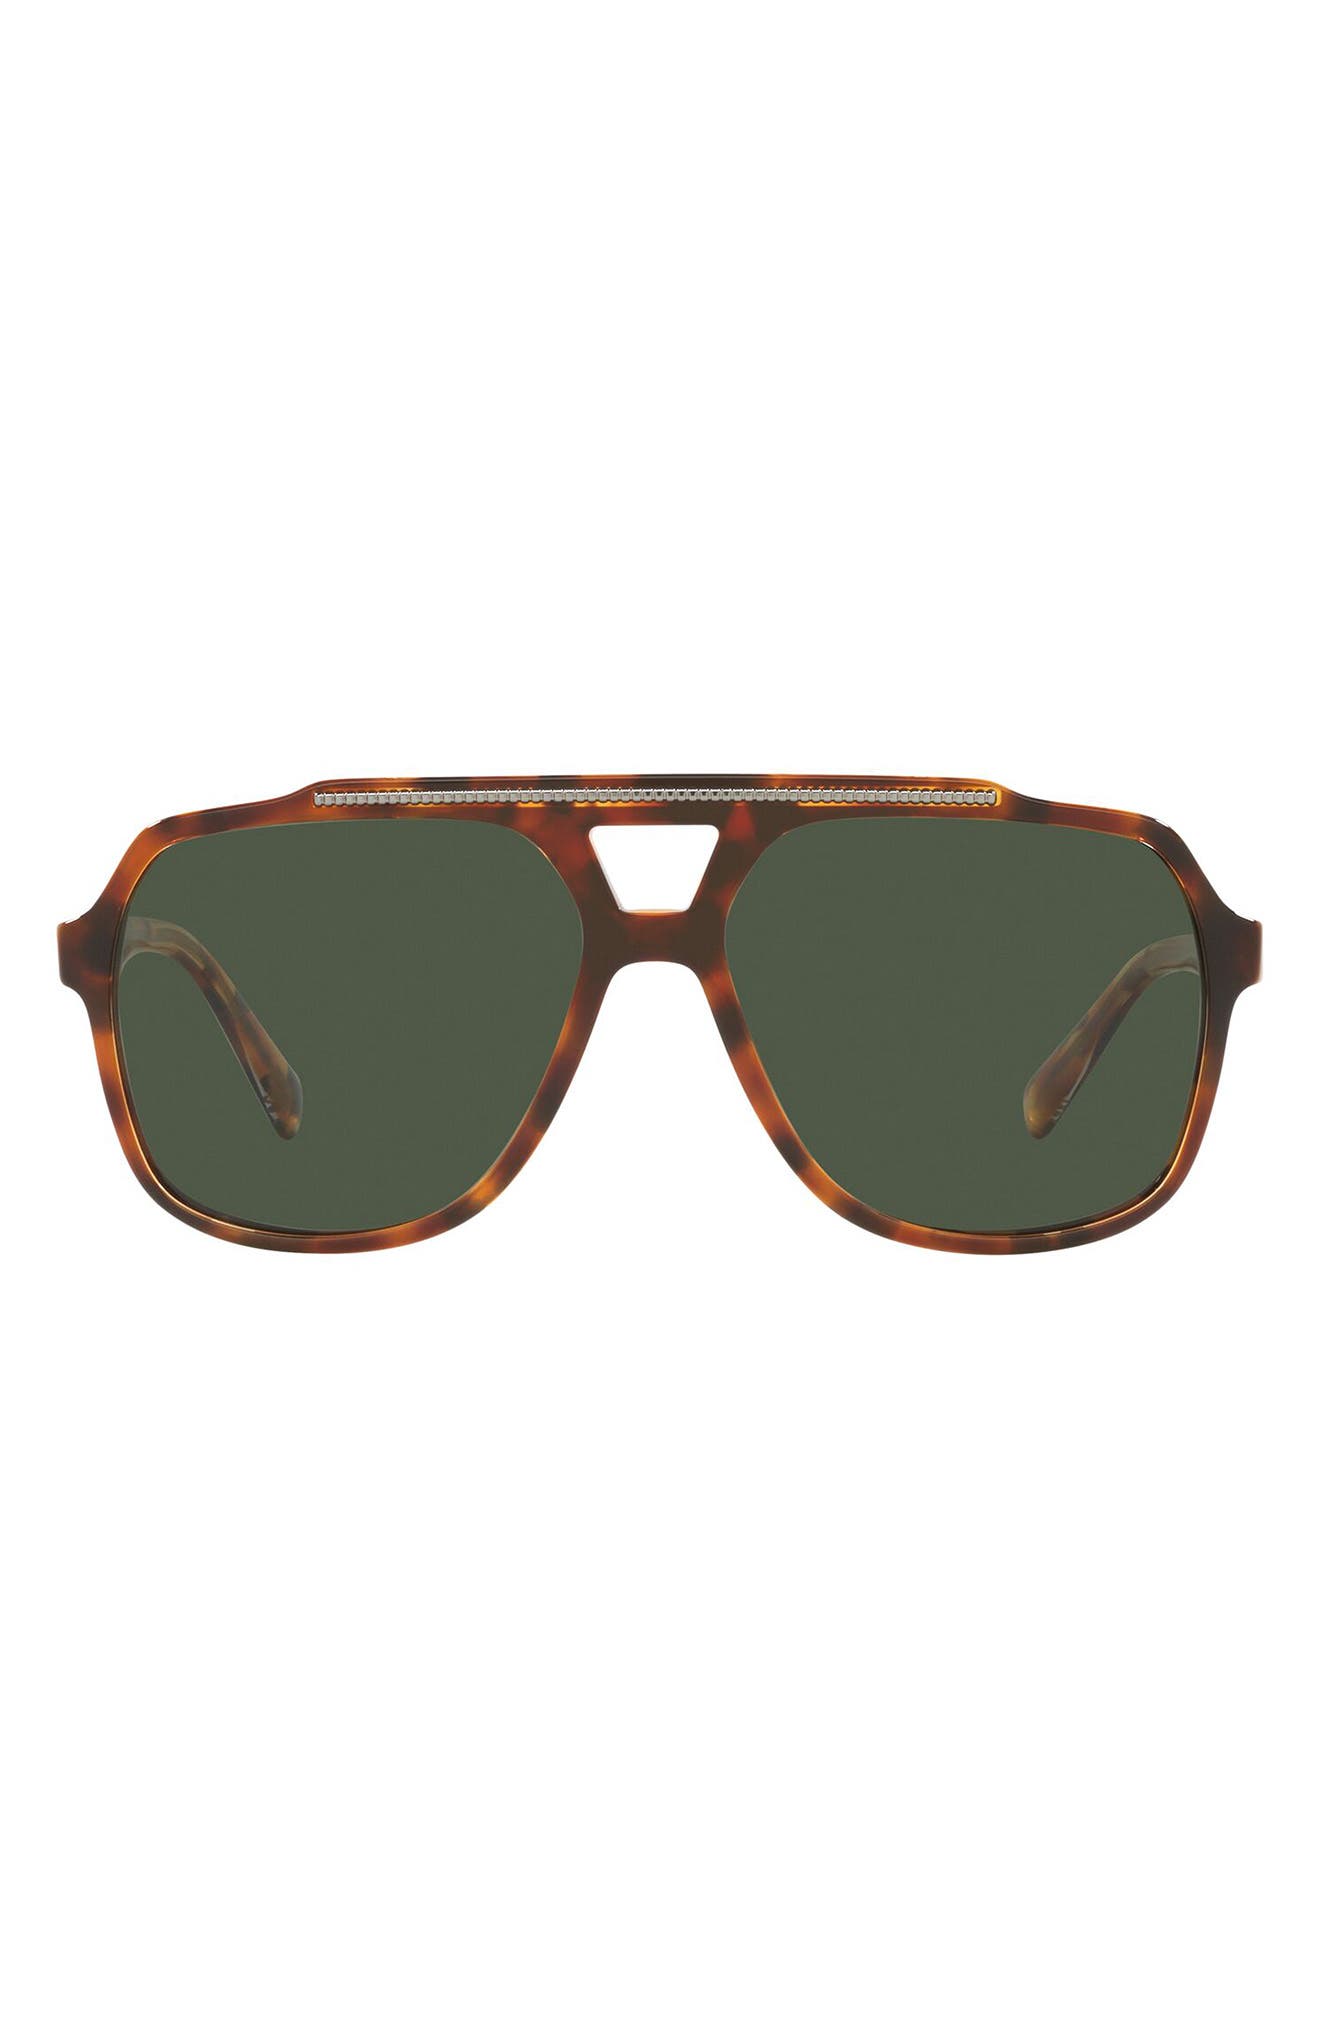 Dolce & Gabbana 60mm Polarized Aviator Sunglasses in Brown Havana/Green Polarized at Nordstrom